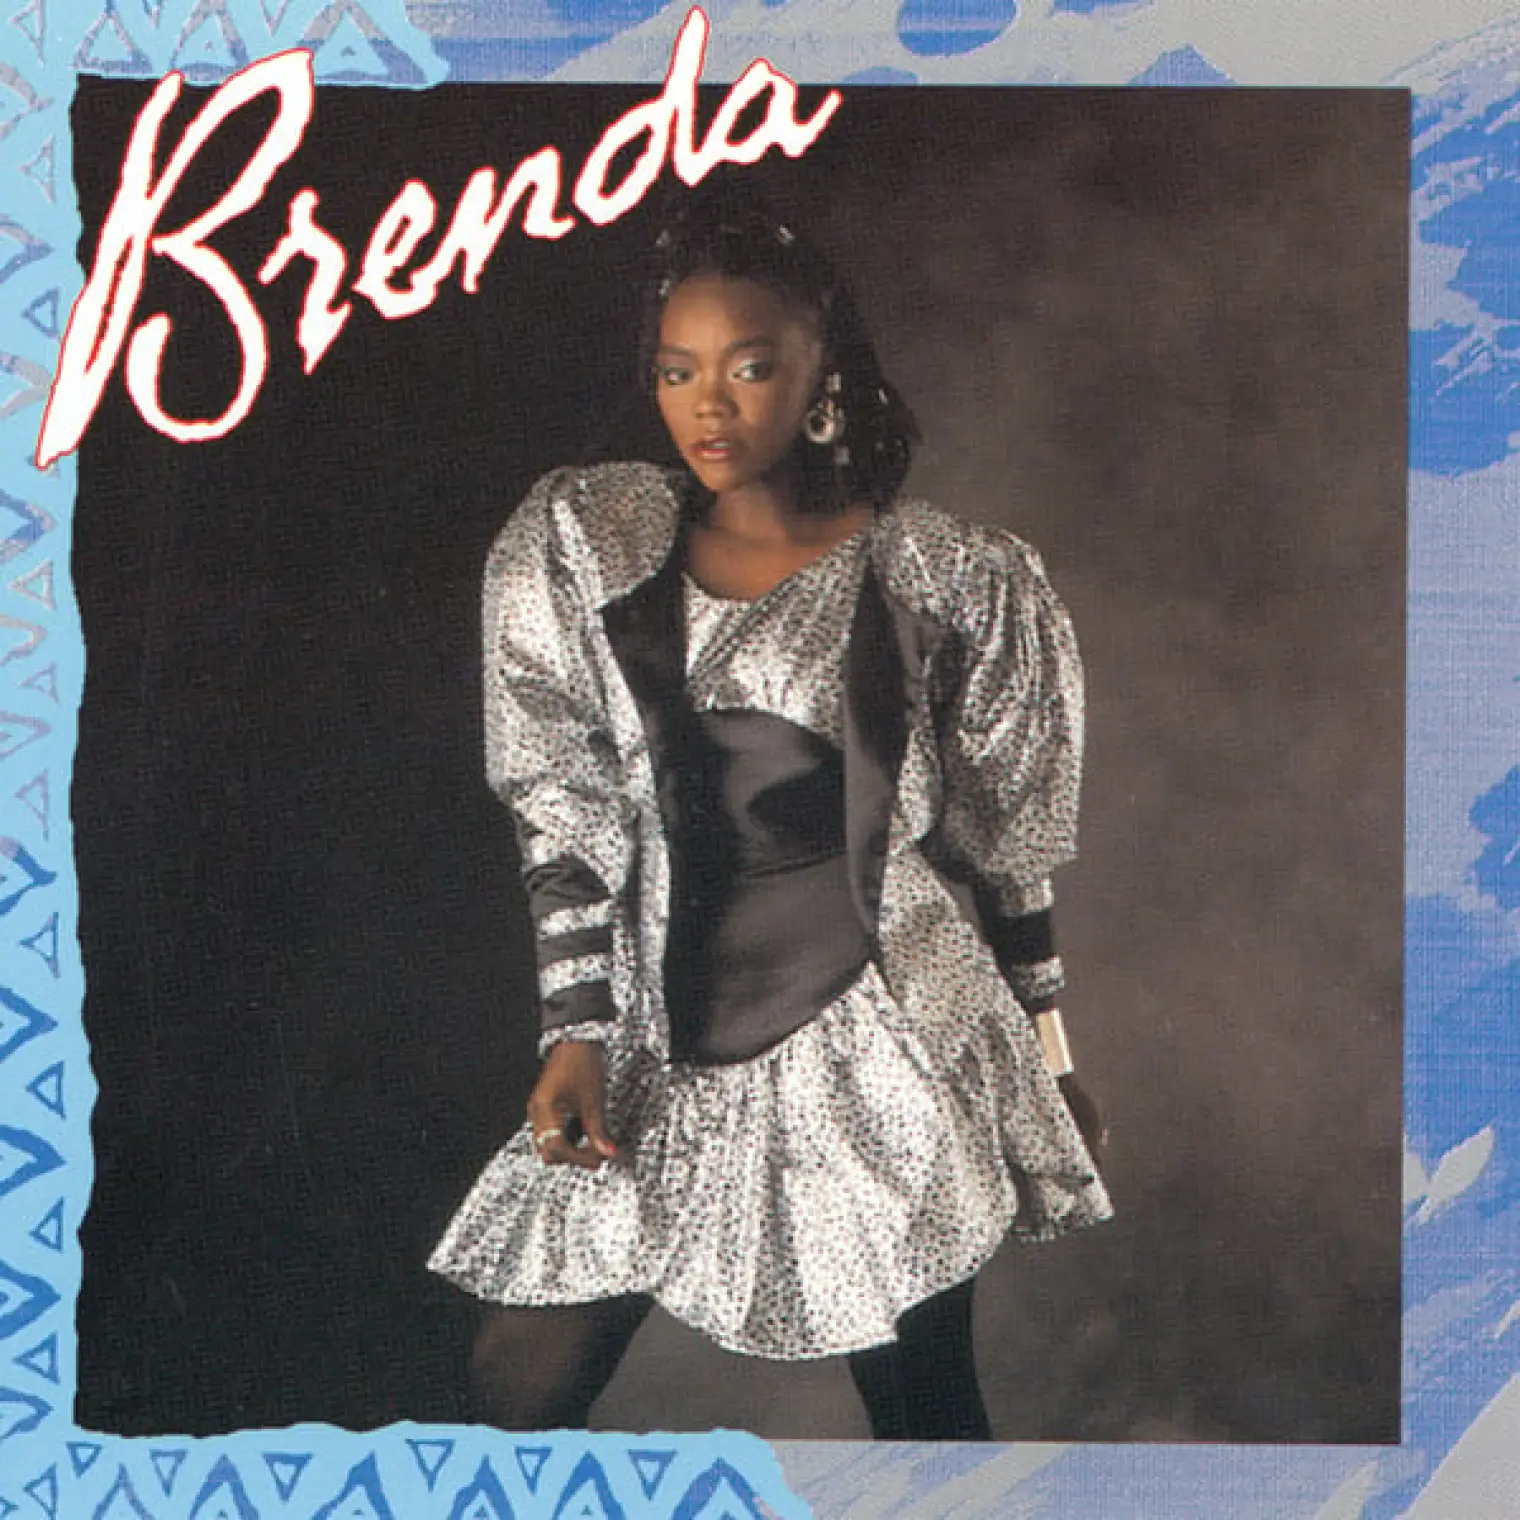 Brenda -  Brenda 